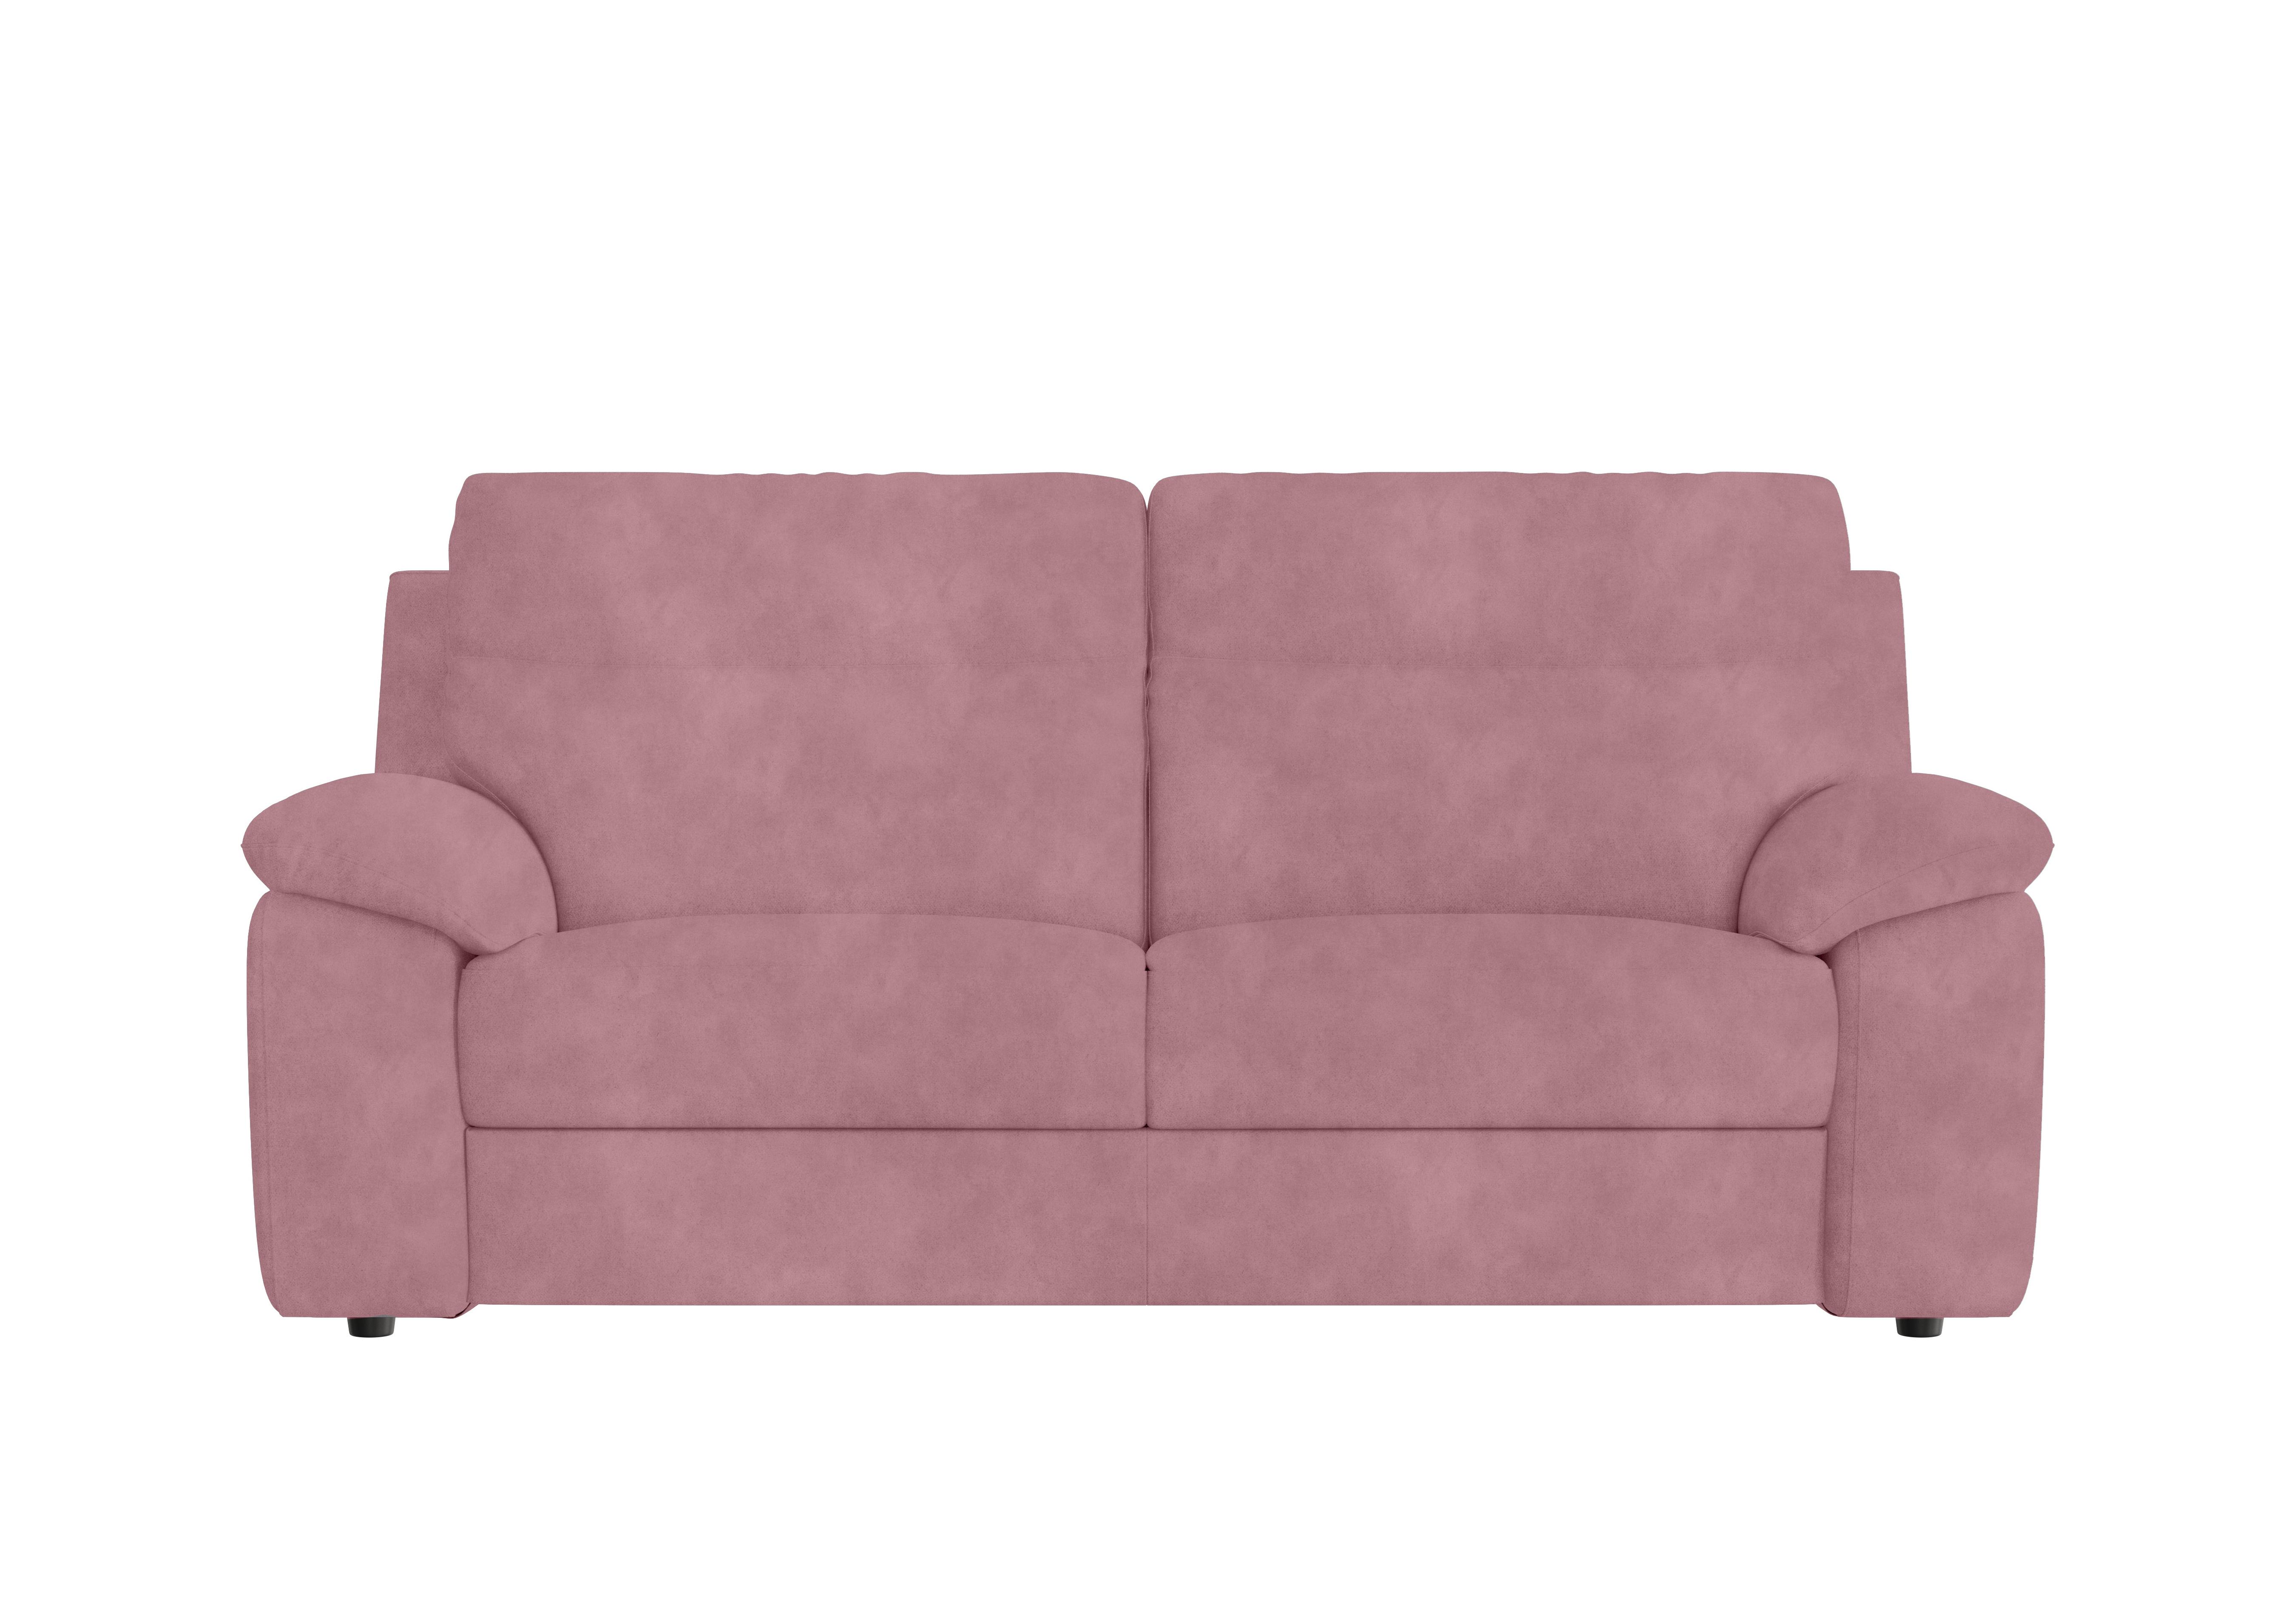 Pepino 3 Seater Fabric Sofa in Selma Rosa on Furniture Village